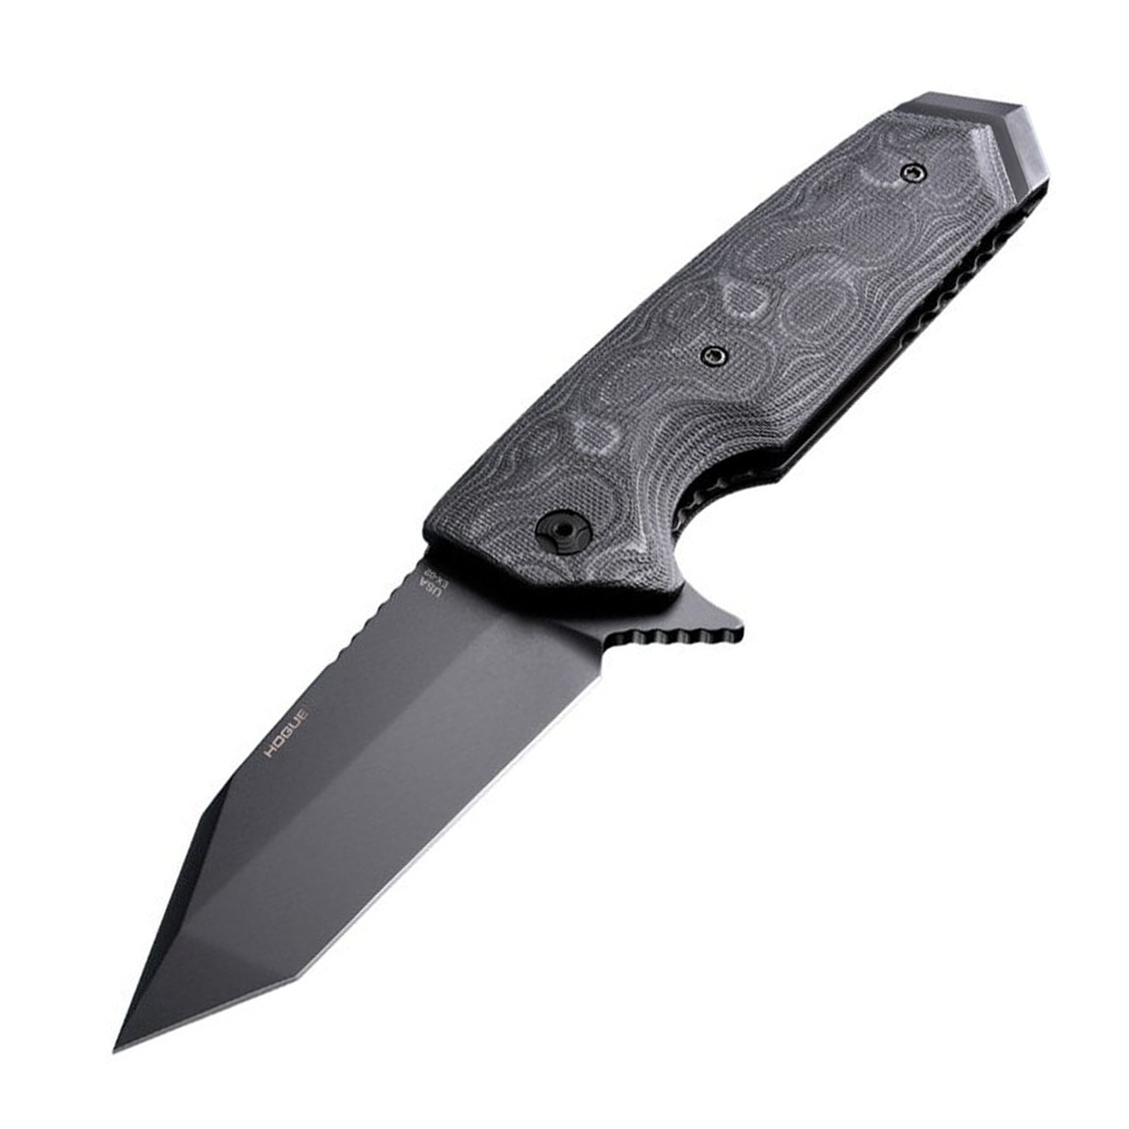 Нож складной туристический Hogue EX-02 Tanto, сталь 154CM, рукоять стеклотекстолит G-Mascus®, чёрный нож с фиксированным клинком hogue ex f02 tanto сталь a2 tool steel рукоять термопластик grn чёрный